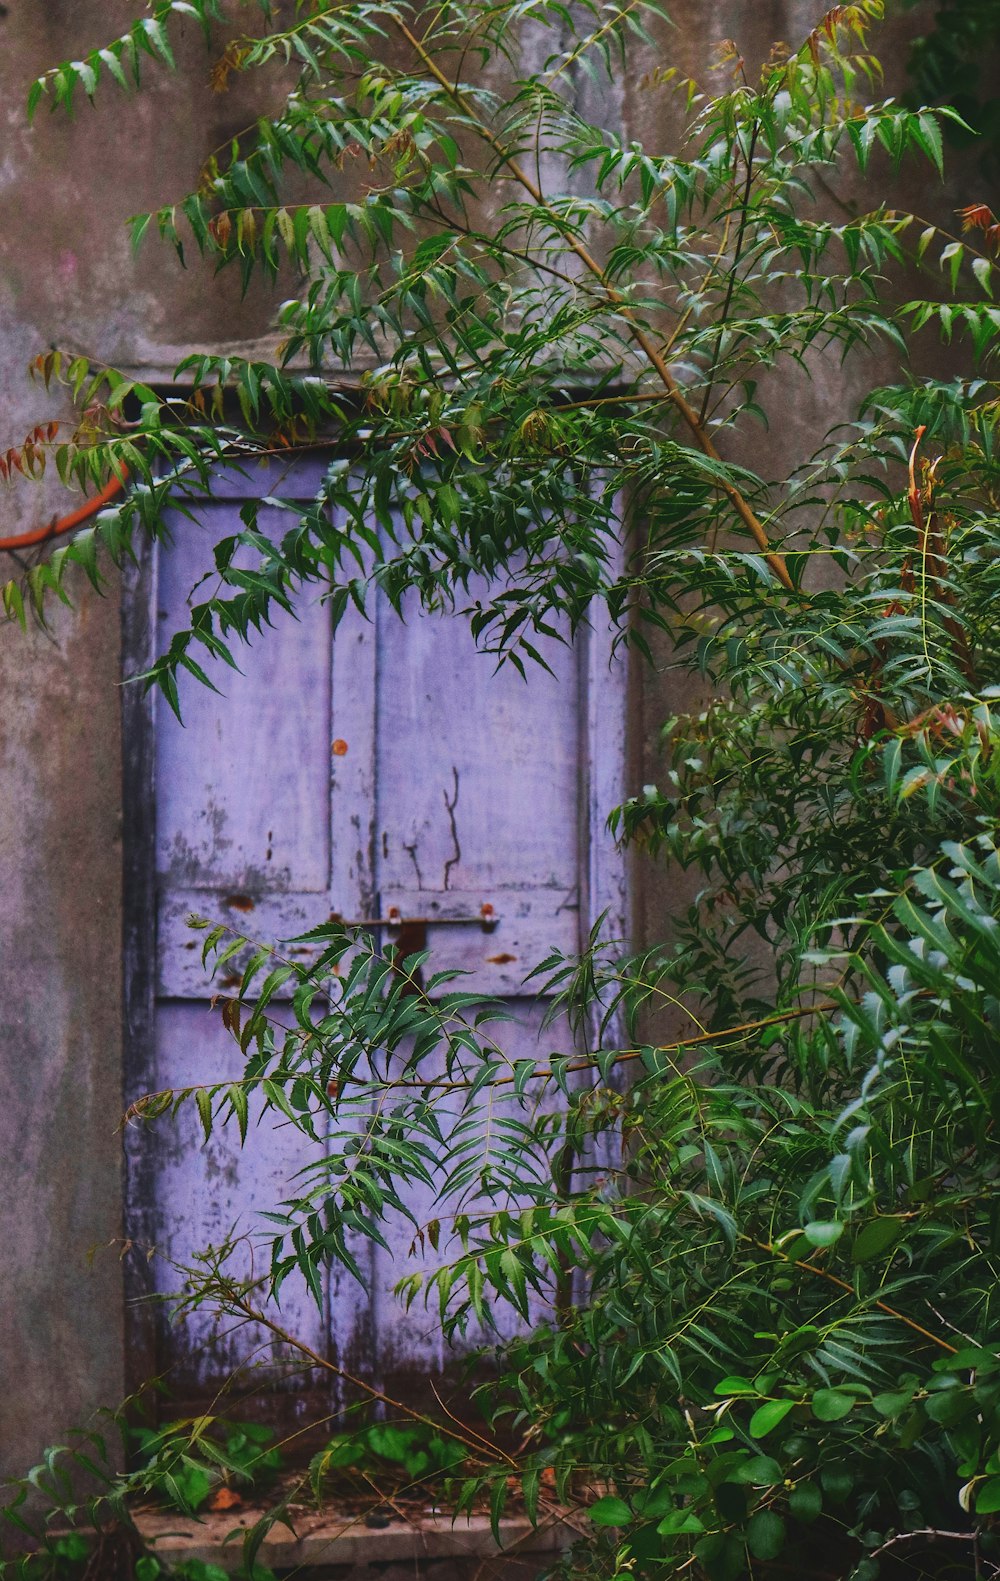 green plant beside gray wooden door